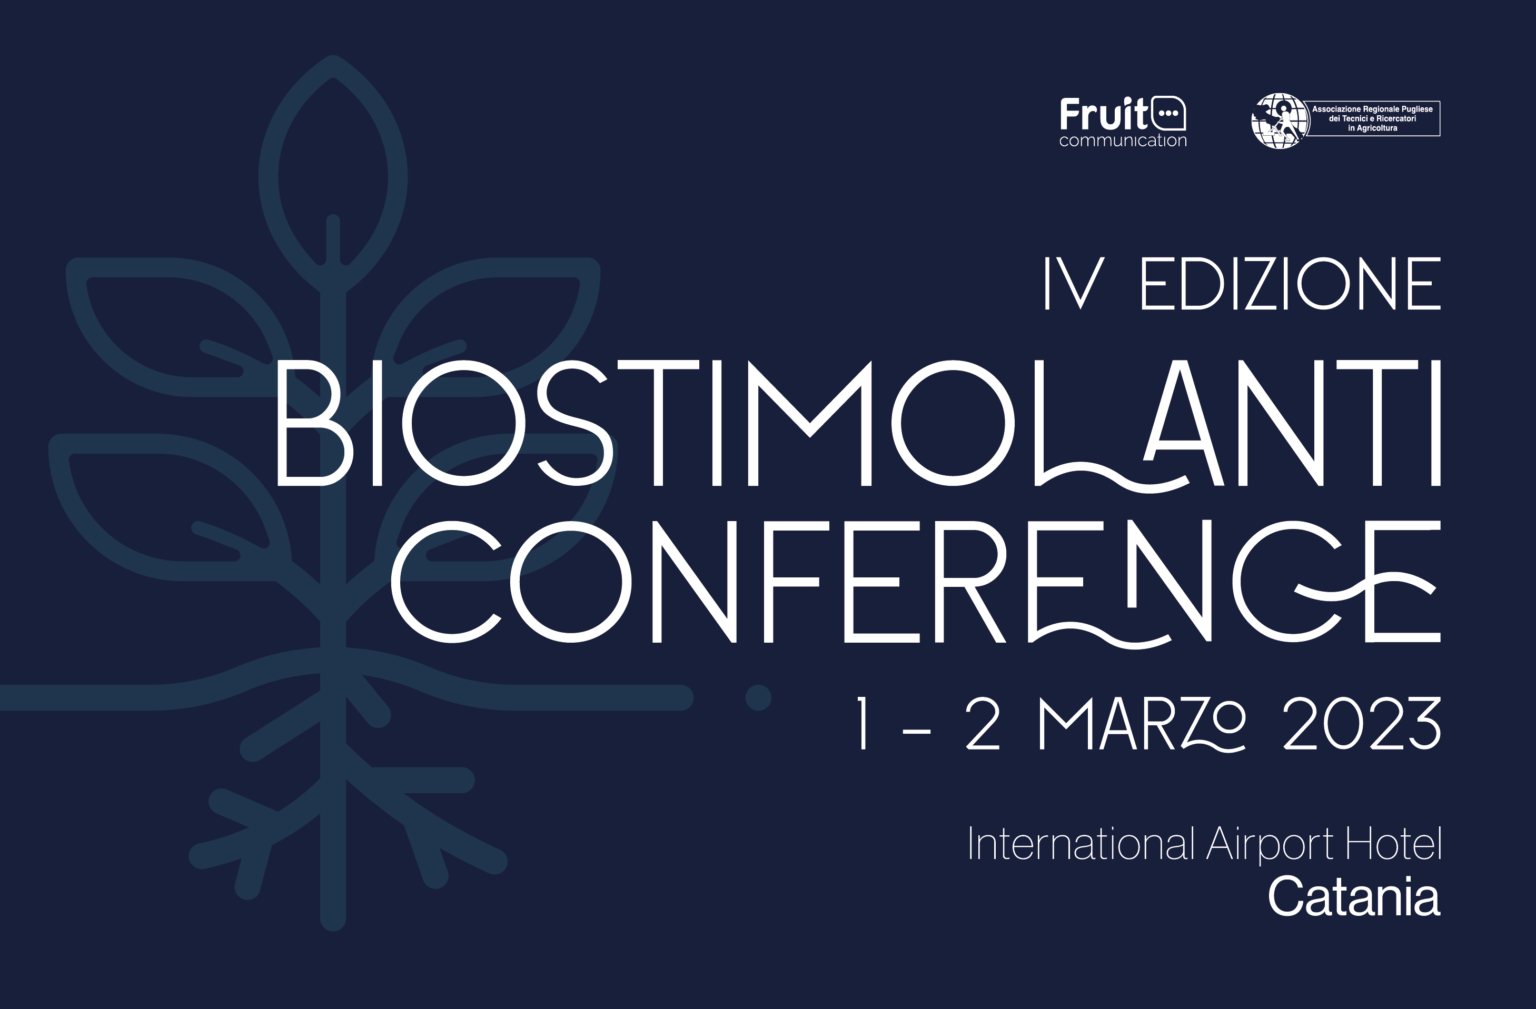 biostimolanti-conference-2023-catania-1-2-marzo